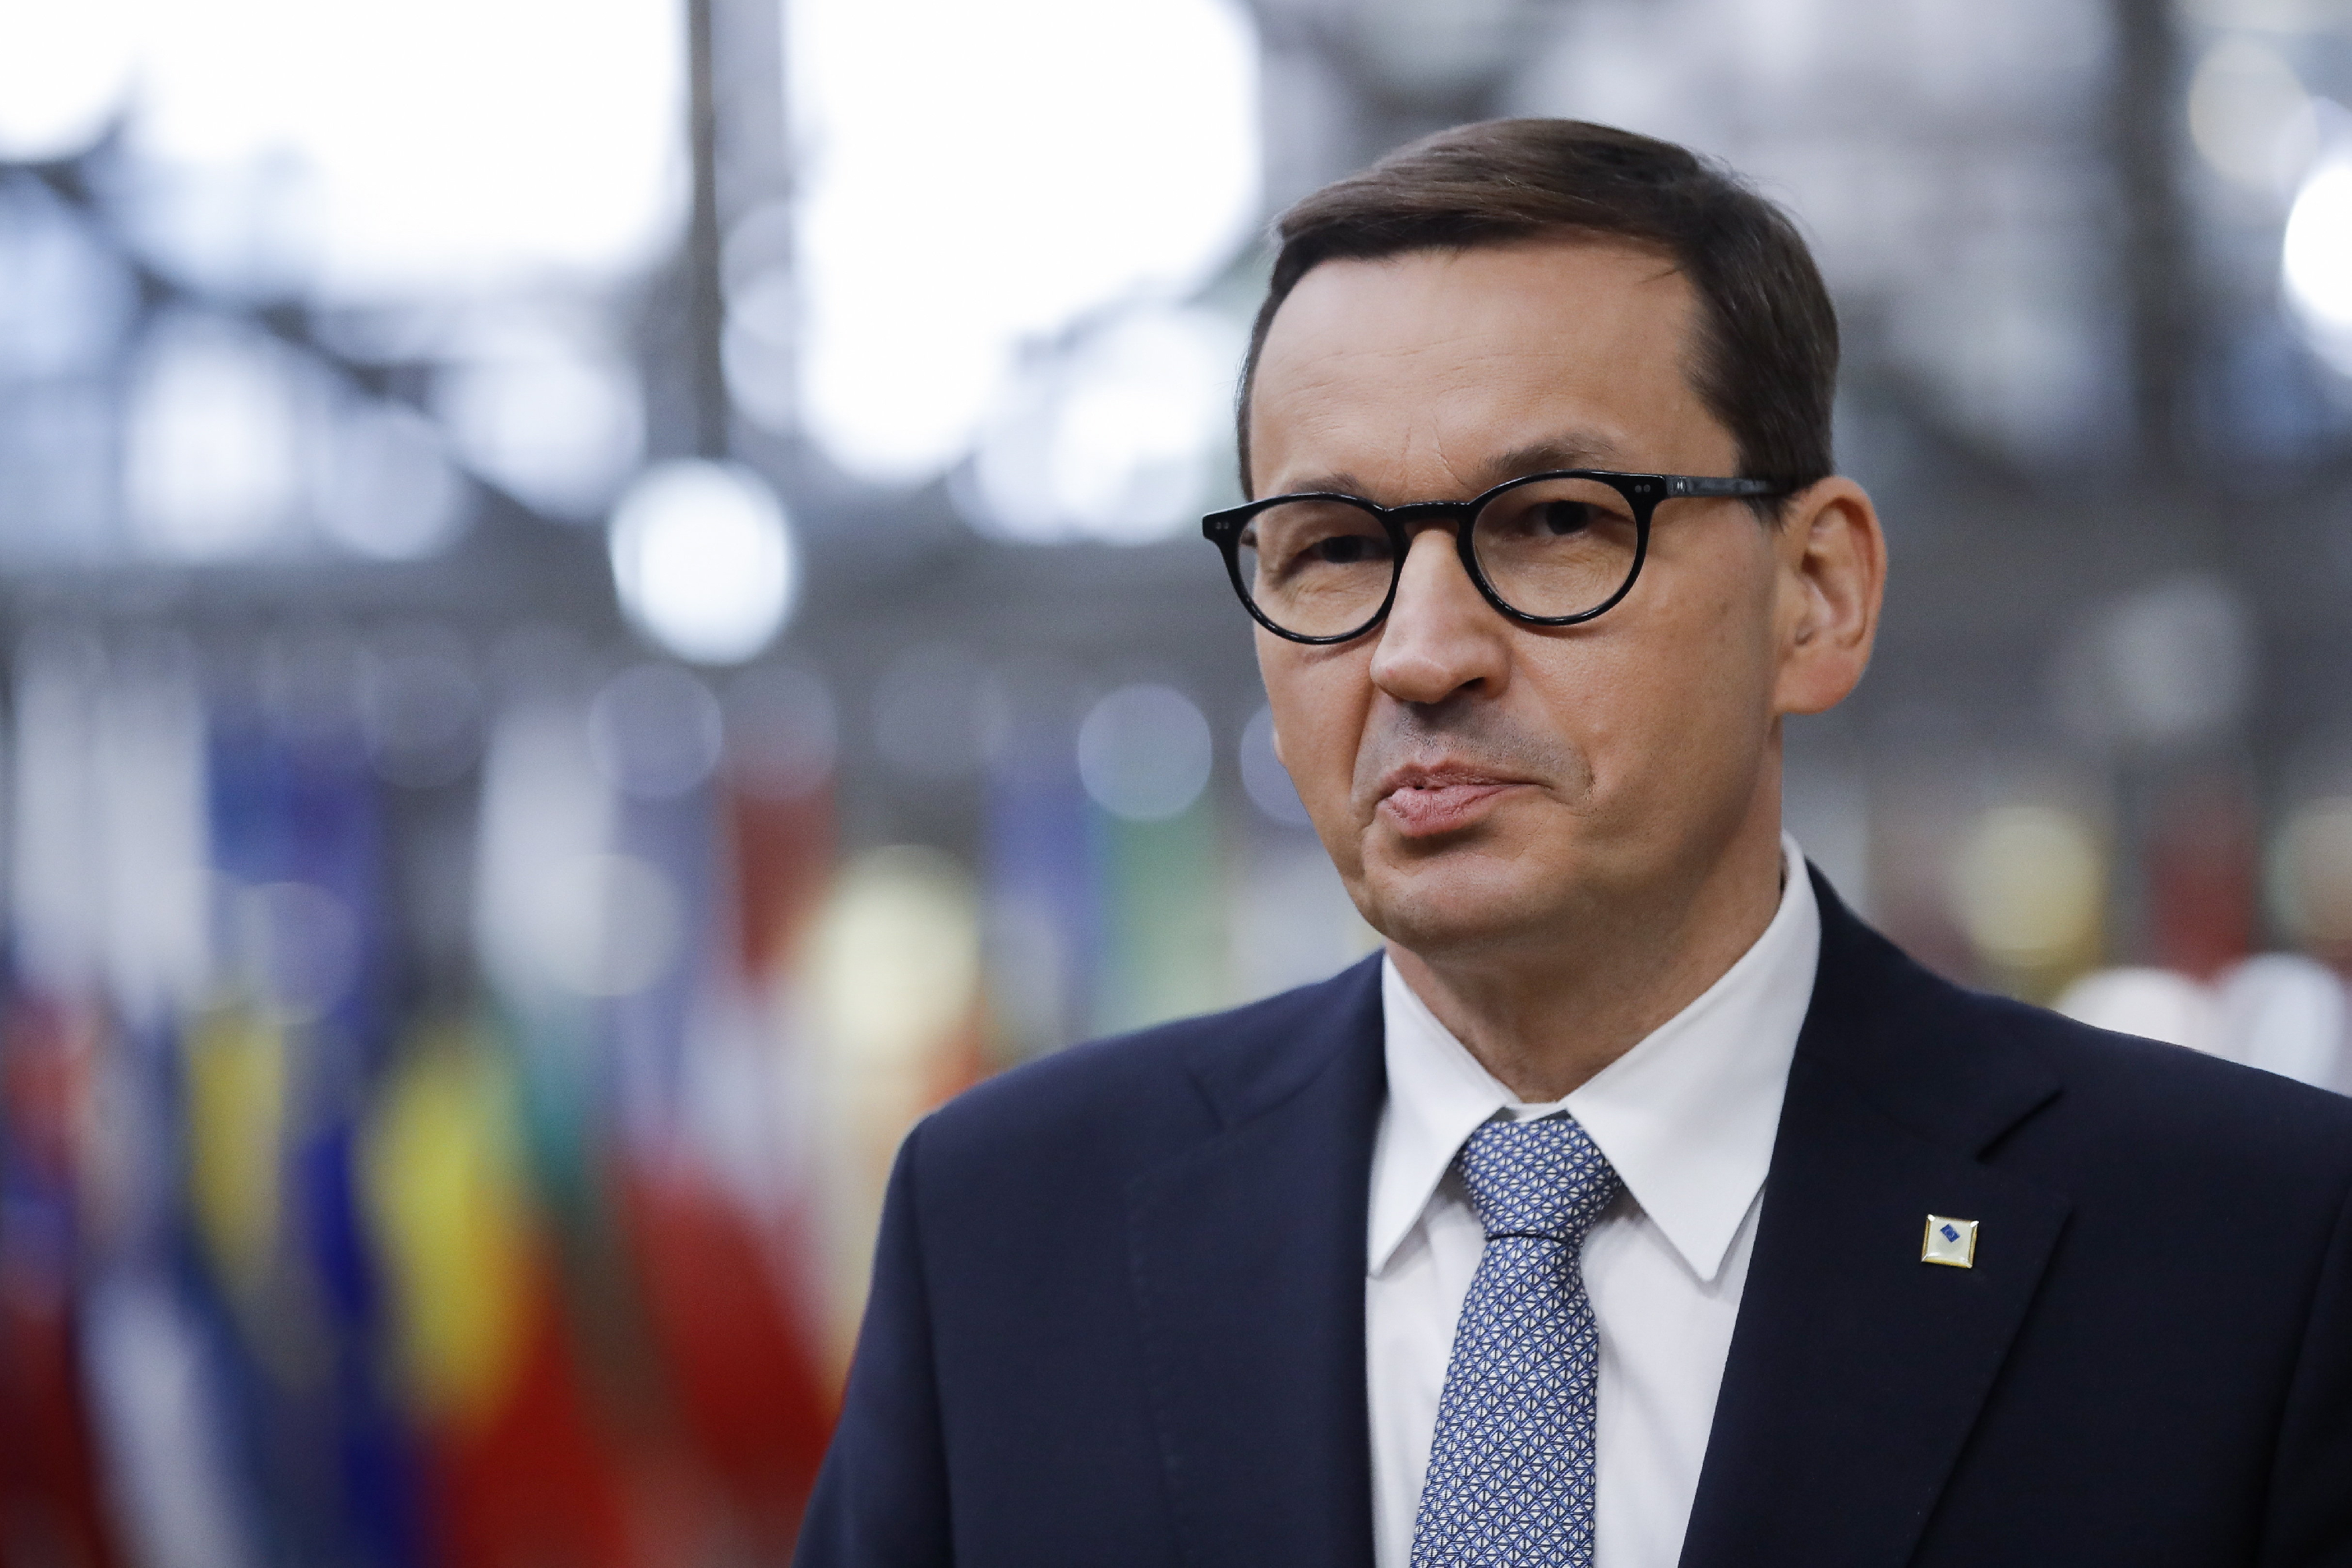 Kiléphet az unióból Lengyelország egy alkotmánybírósági döntés után